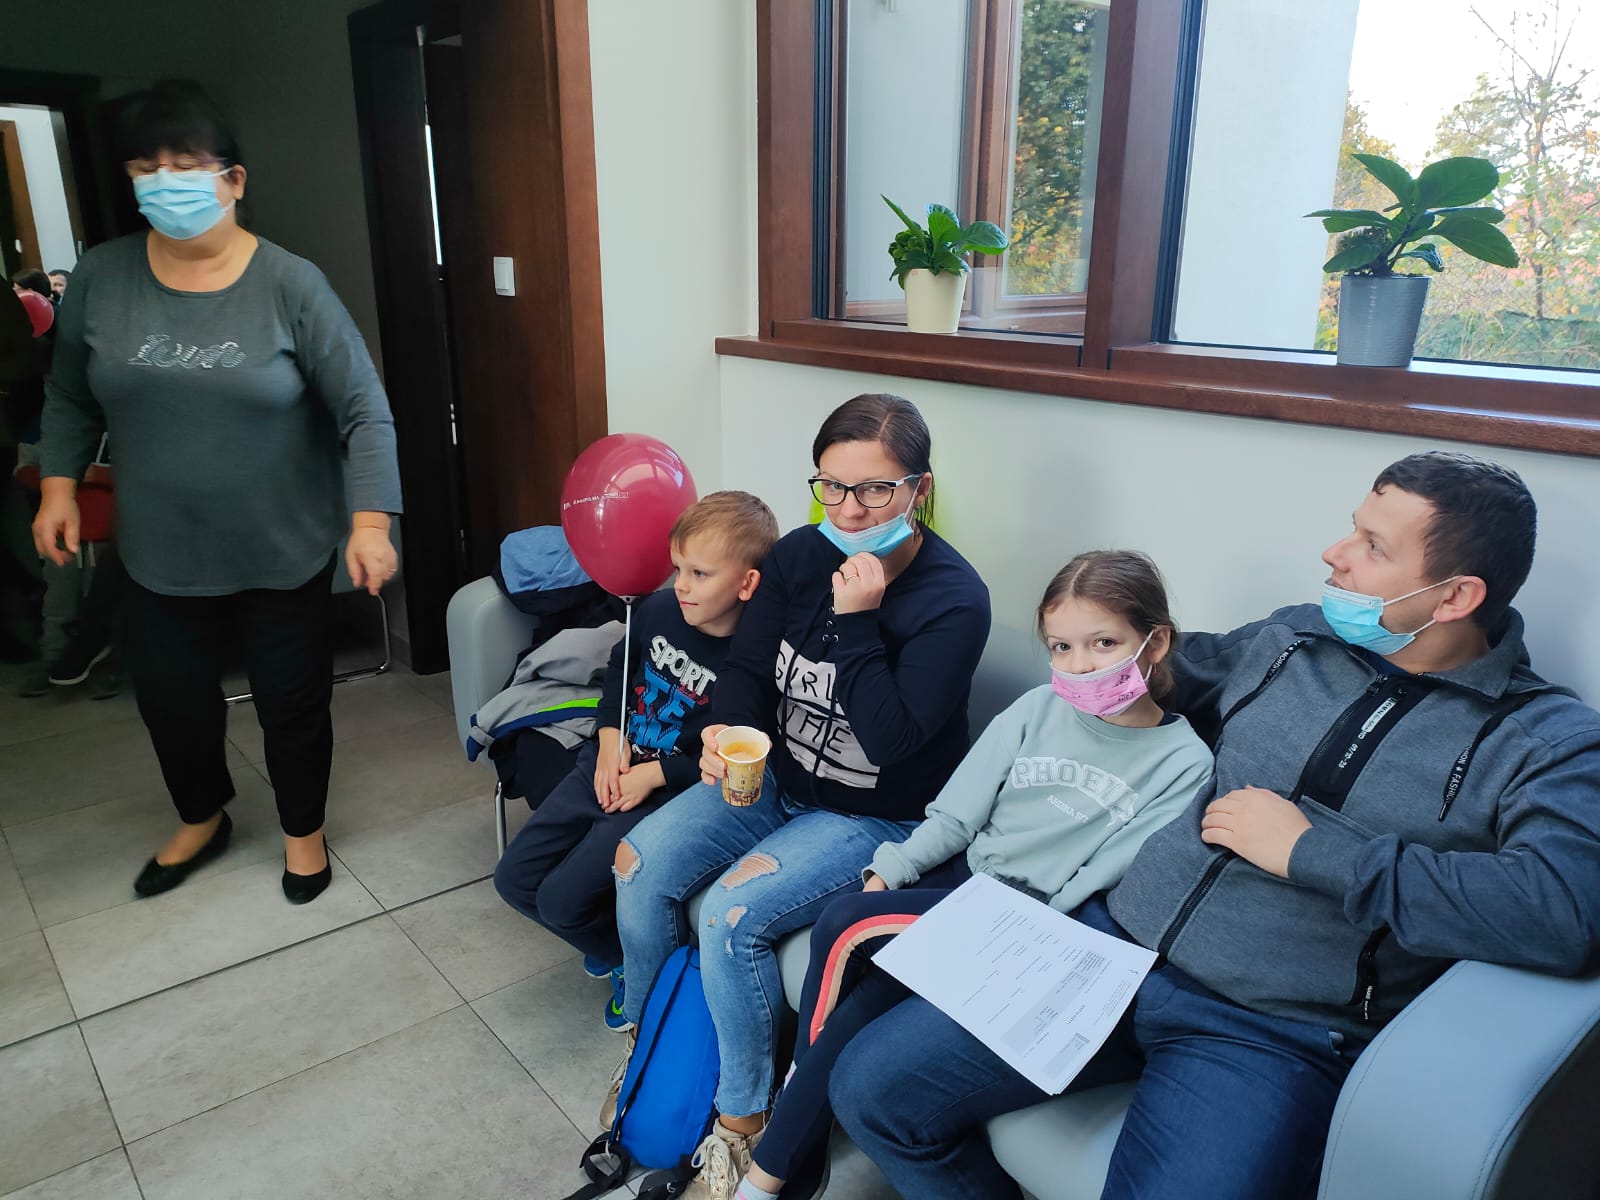 rodzice w maseczkach siedzą z dziećmi na poczekalni w Centrum Medycznym Dr Smółka